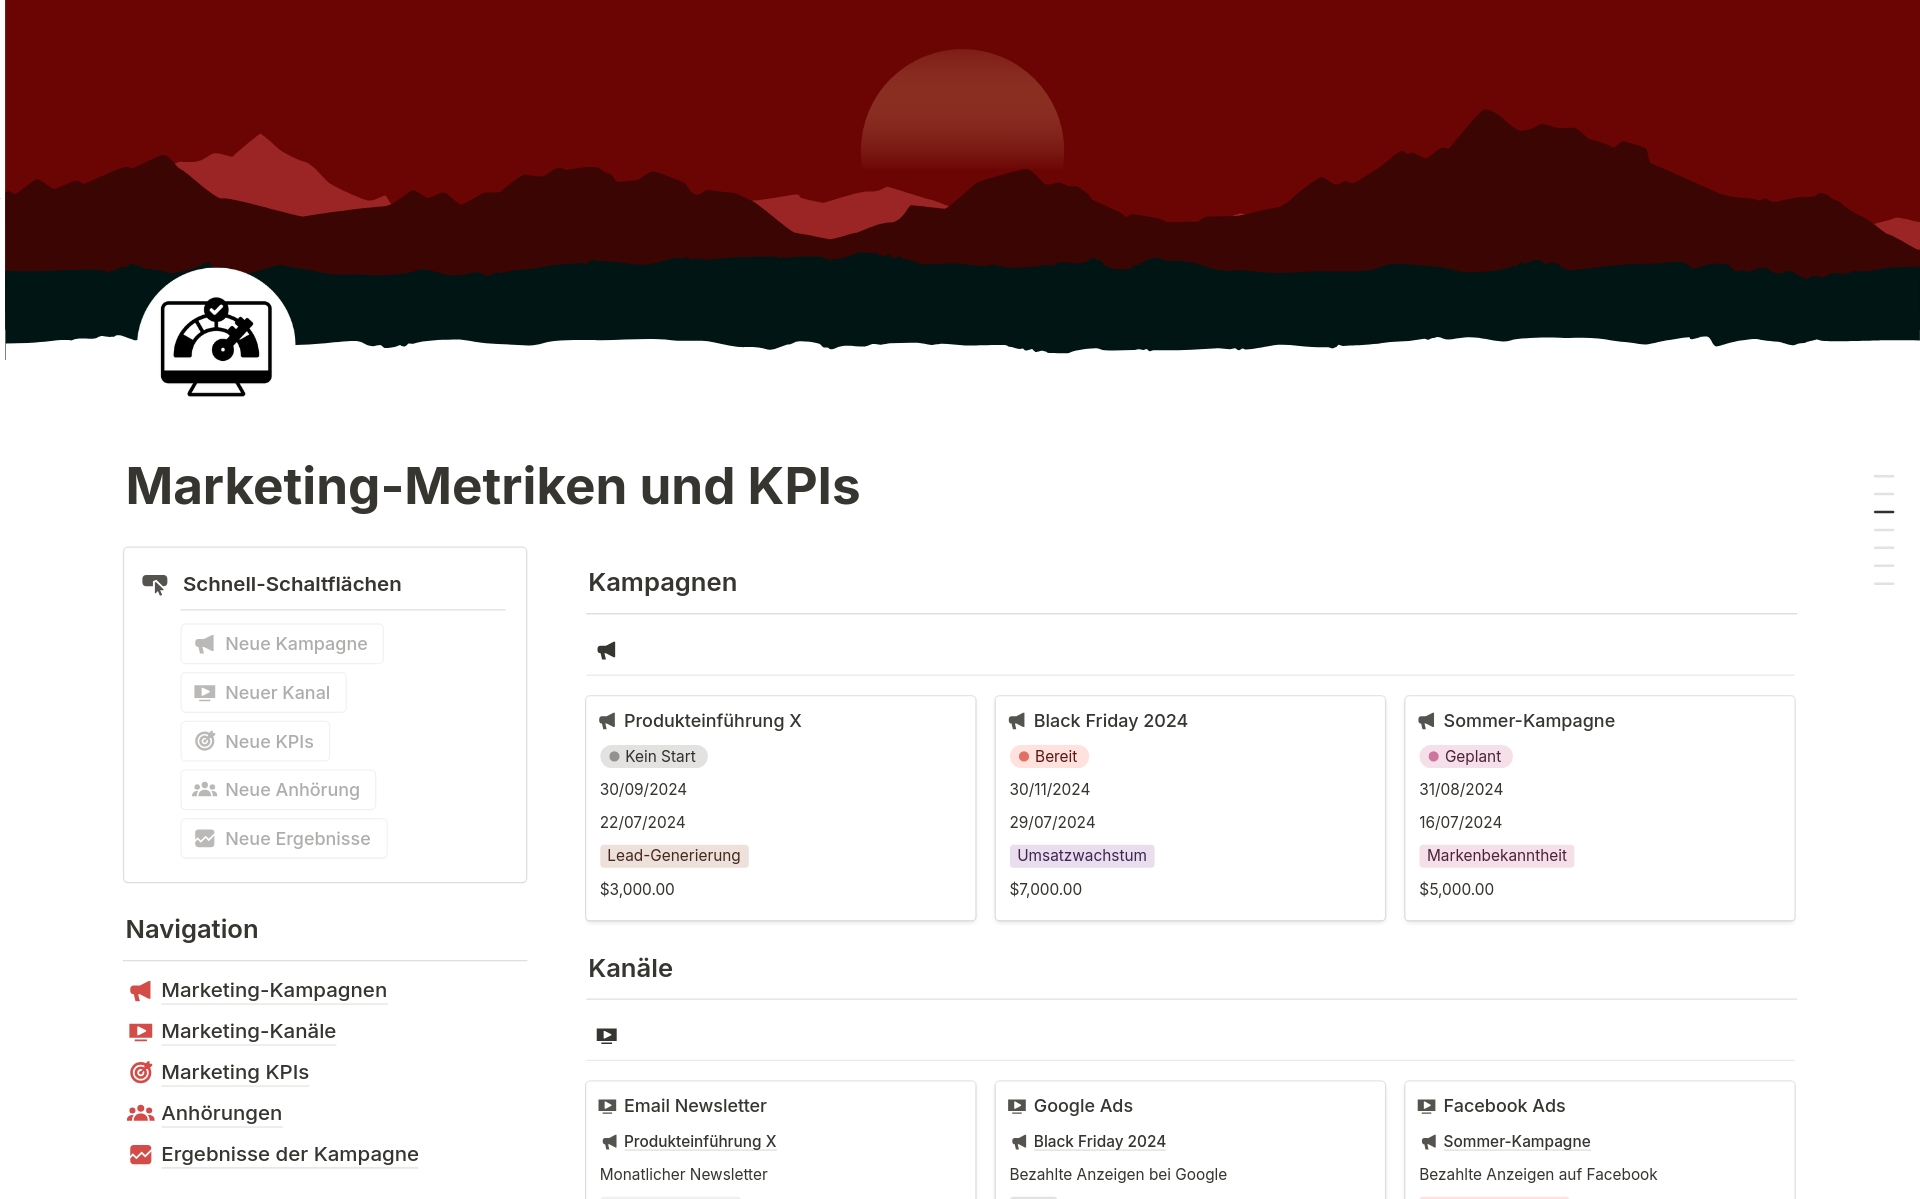 Vista previa de una plantilla para Marketing-Metriken und KPIs